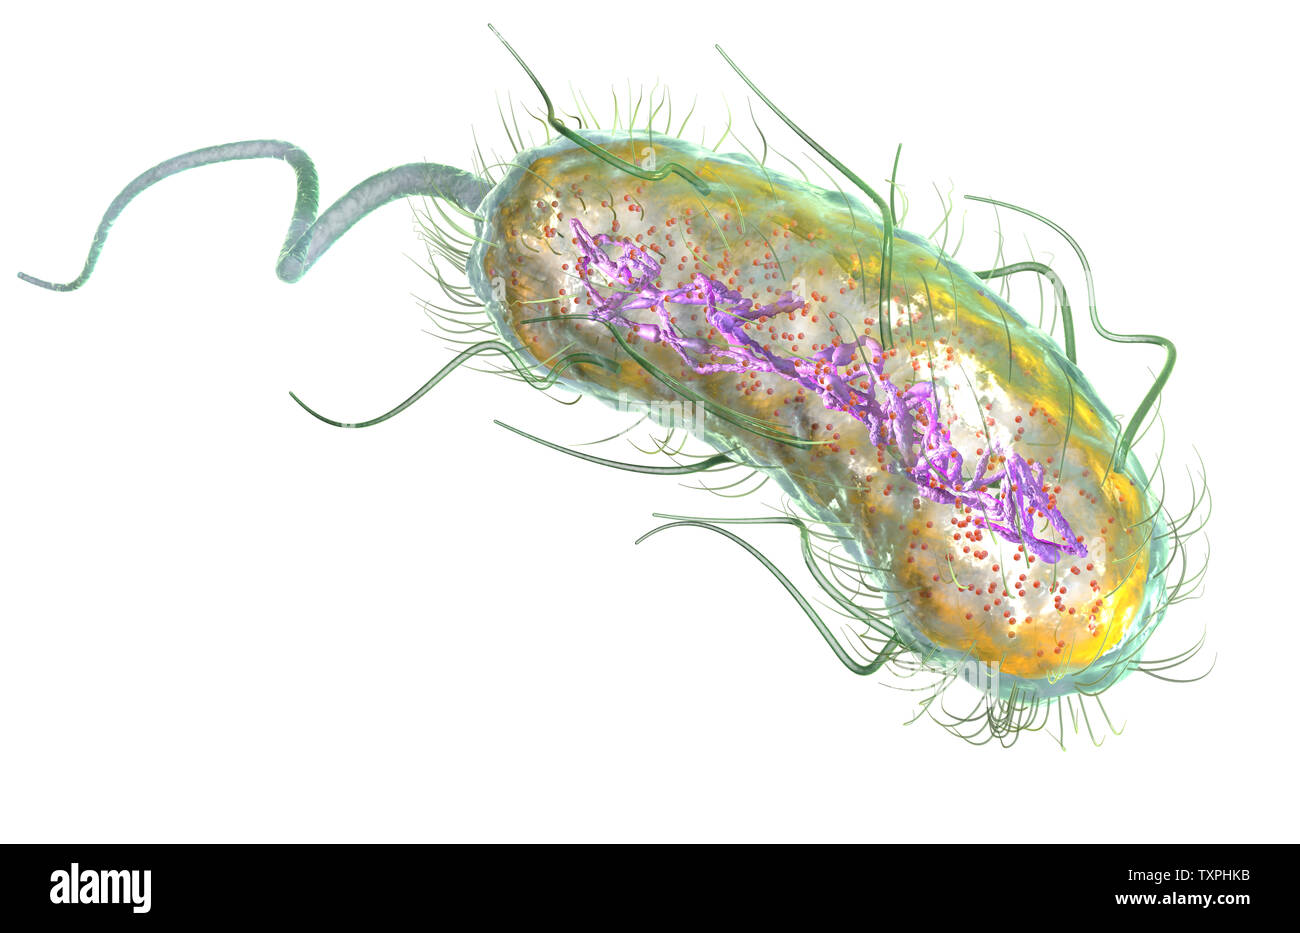 Ilustración que muestra la bacteria Escherichia coli (E. coli) con al nucleótido (ADN), ribosomas, citoplasma, flagelo y fimbrias Foto de stock